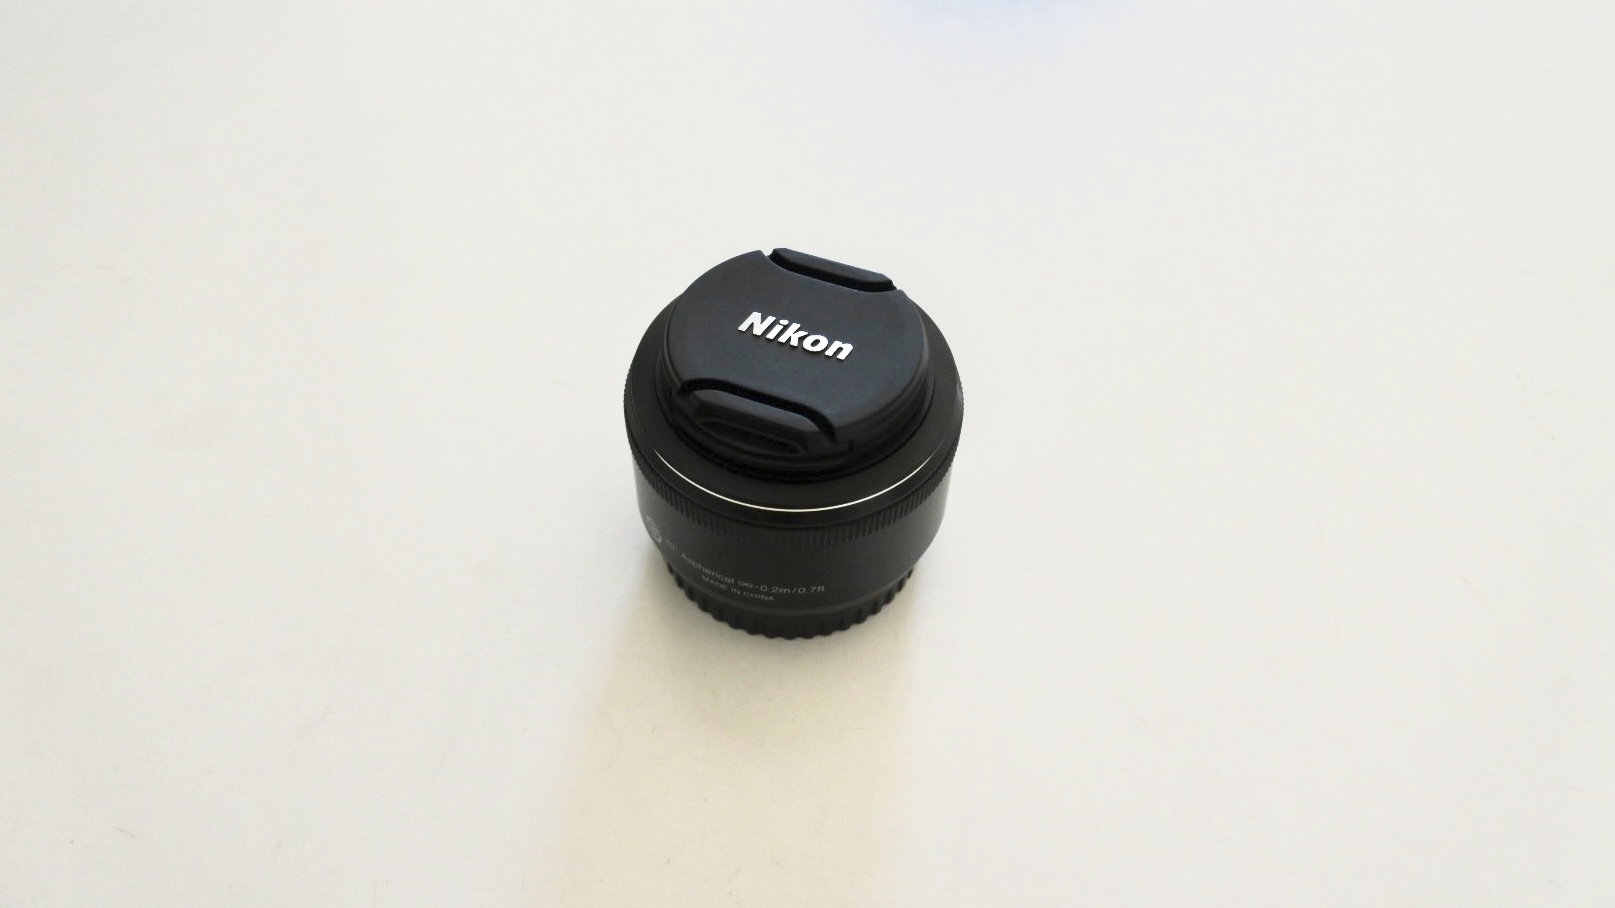 1 NIKKOR 18.5mm f/1.8の単焦点レンズを買いました